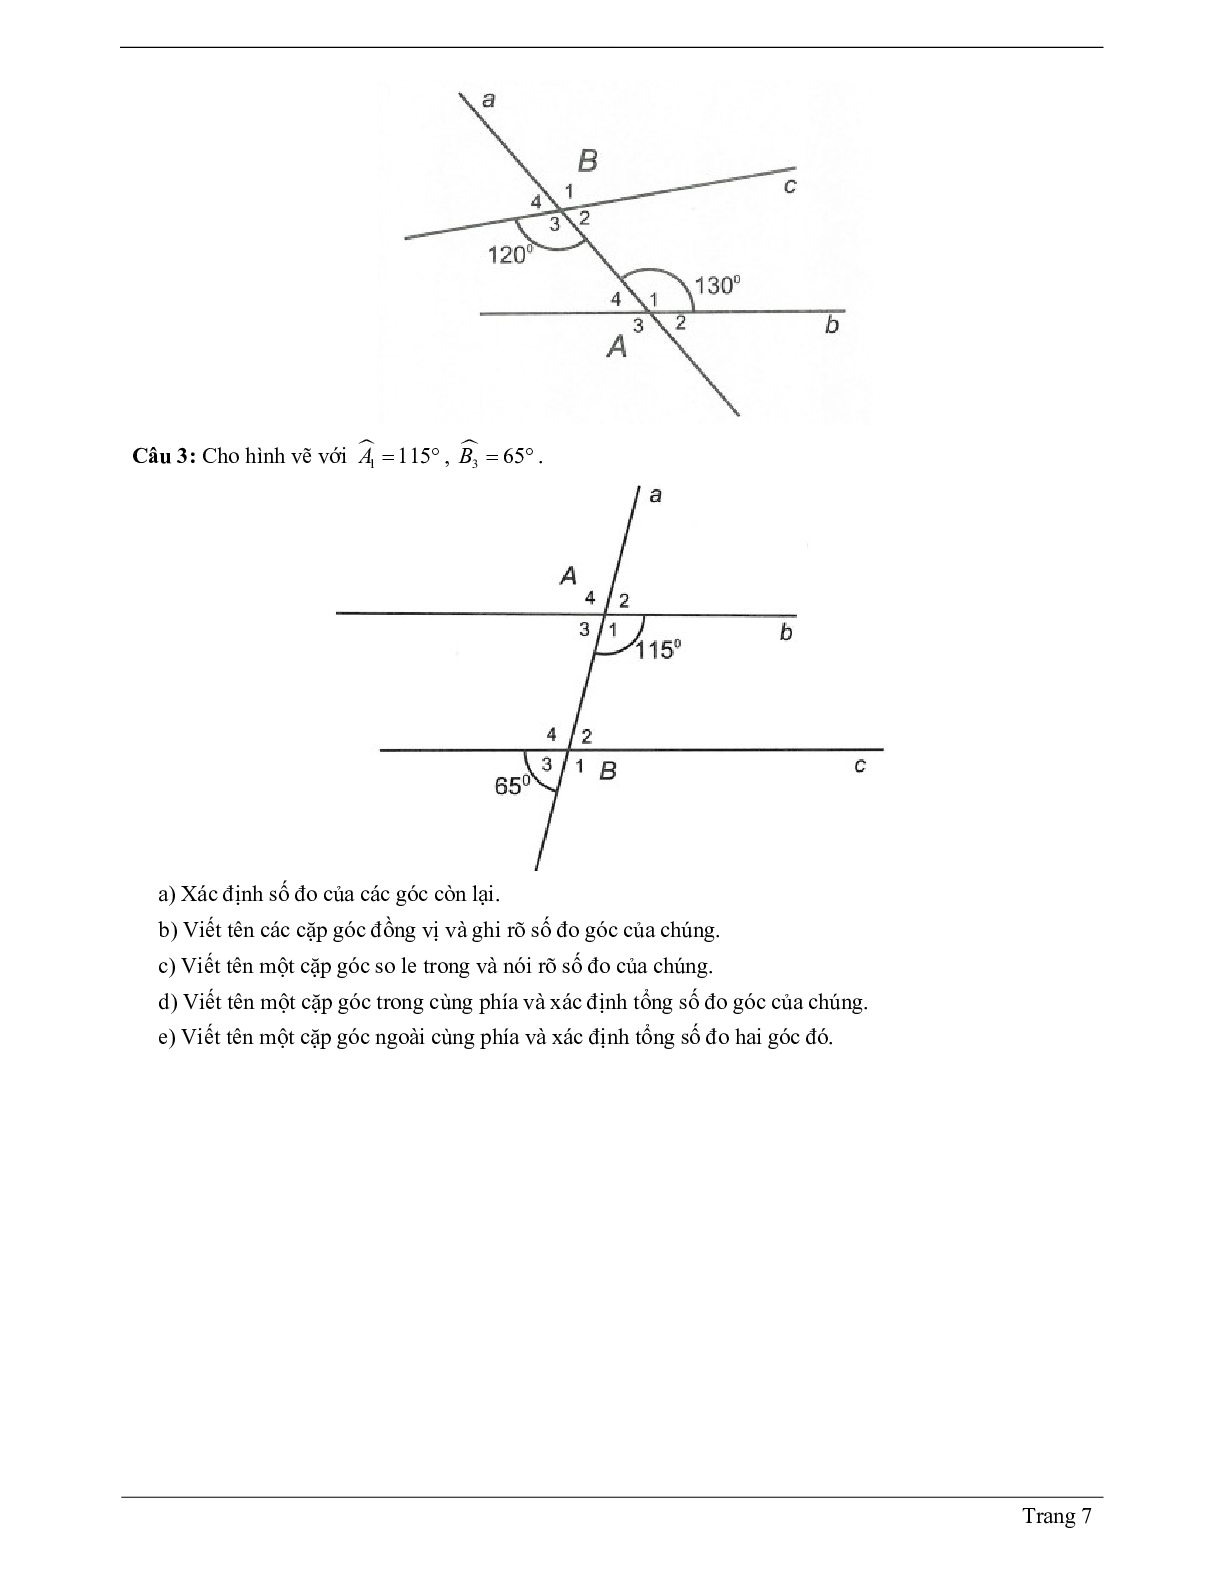 Lý thuyết Toán 7 có đáp án: Góc tạo bởi một đường thẳng cắt hai đường thẳng (trang 7)